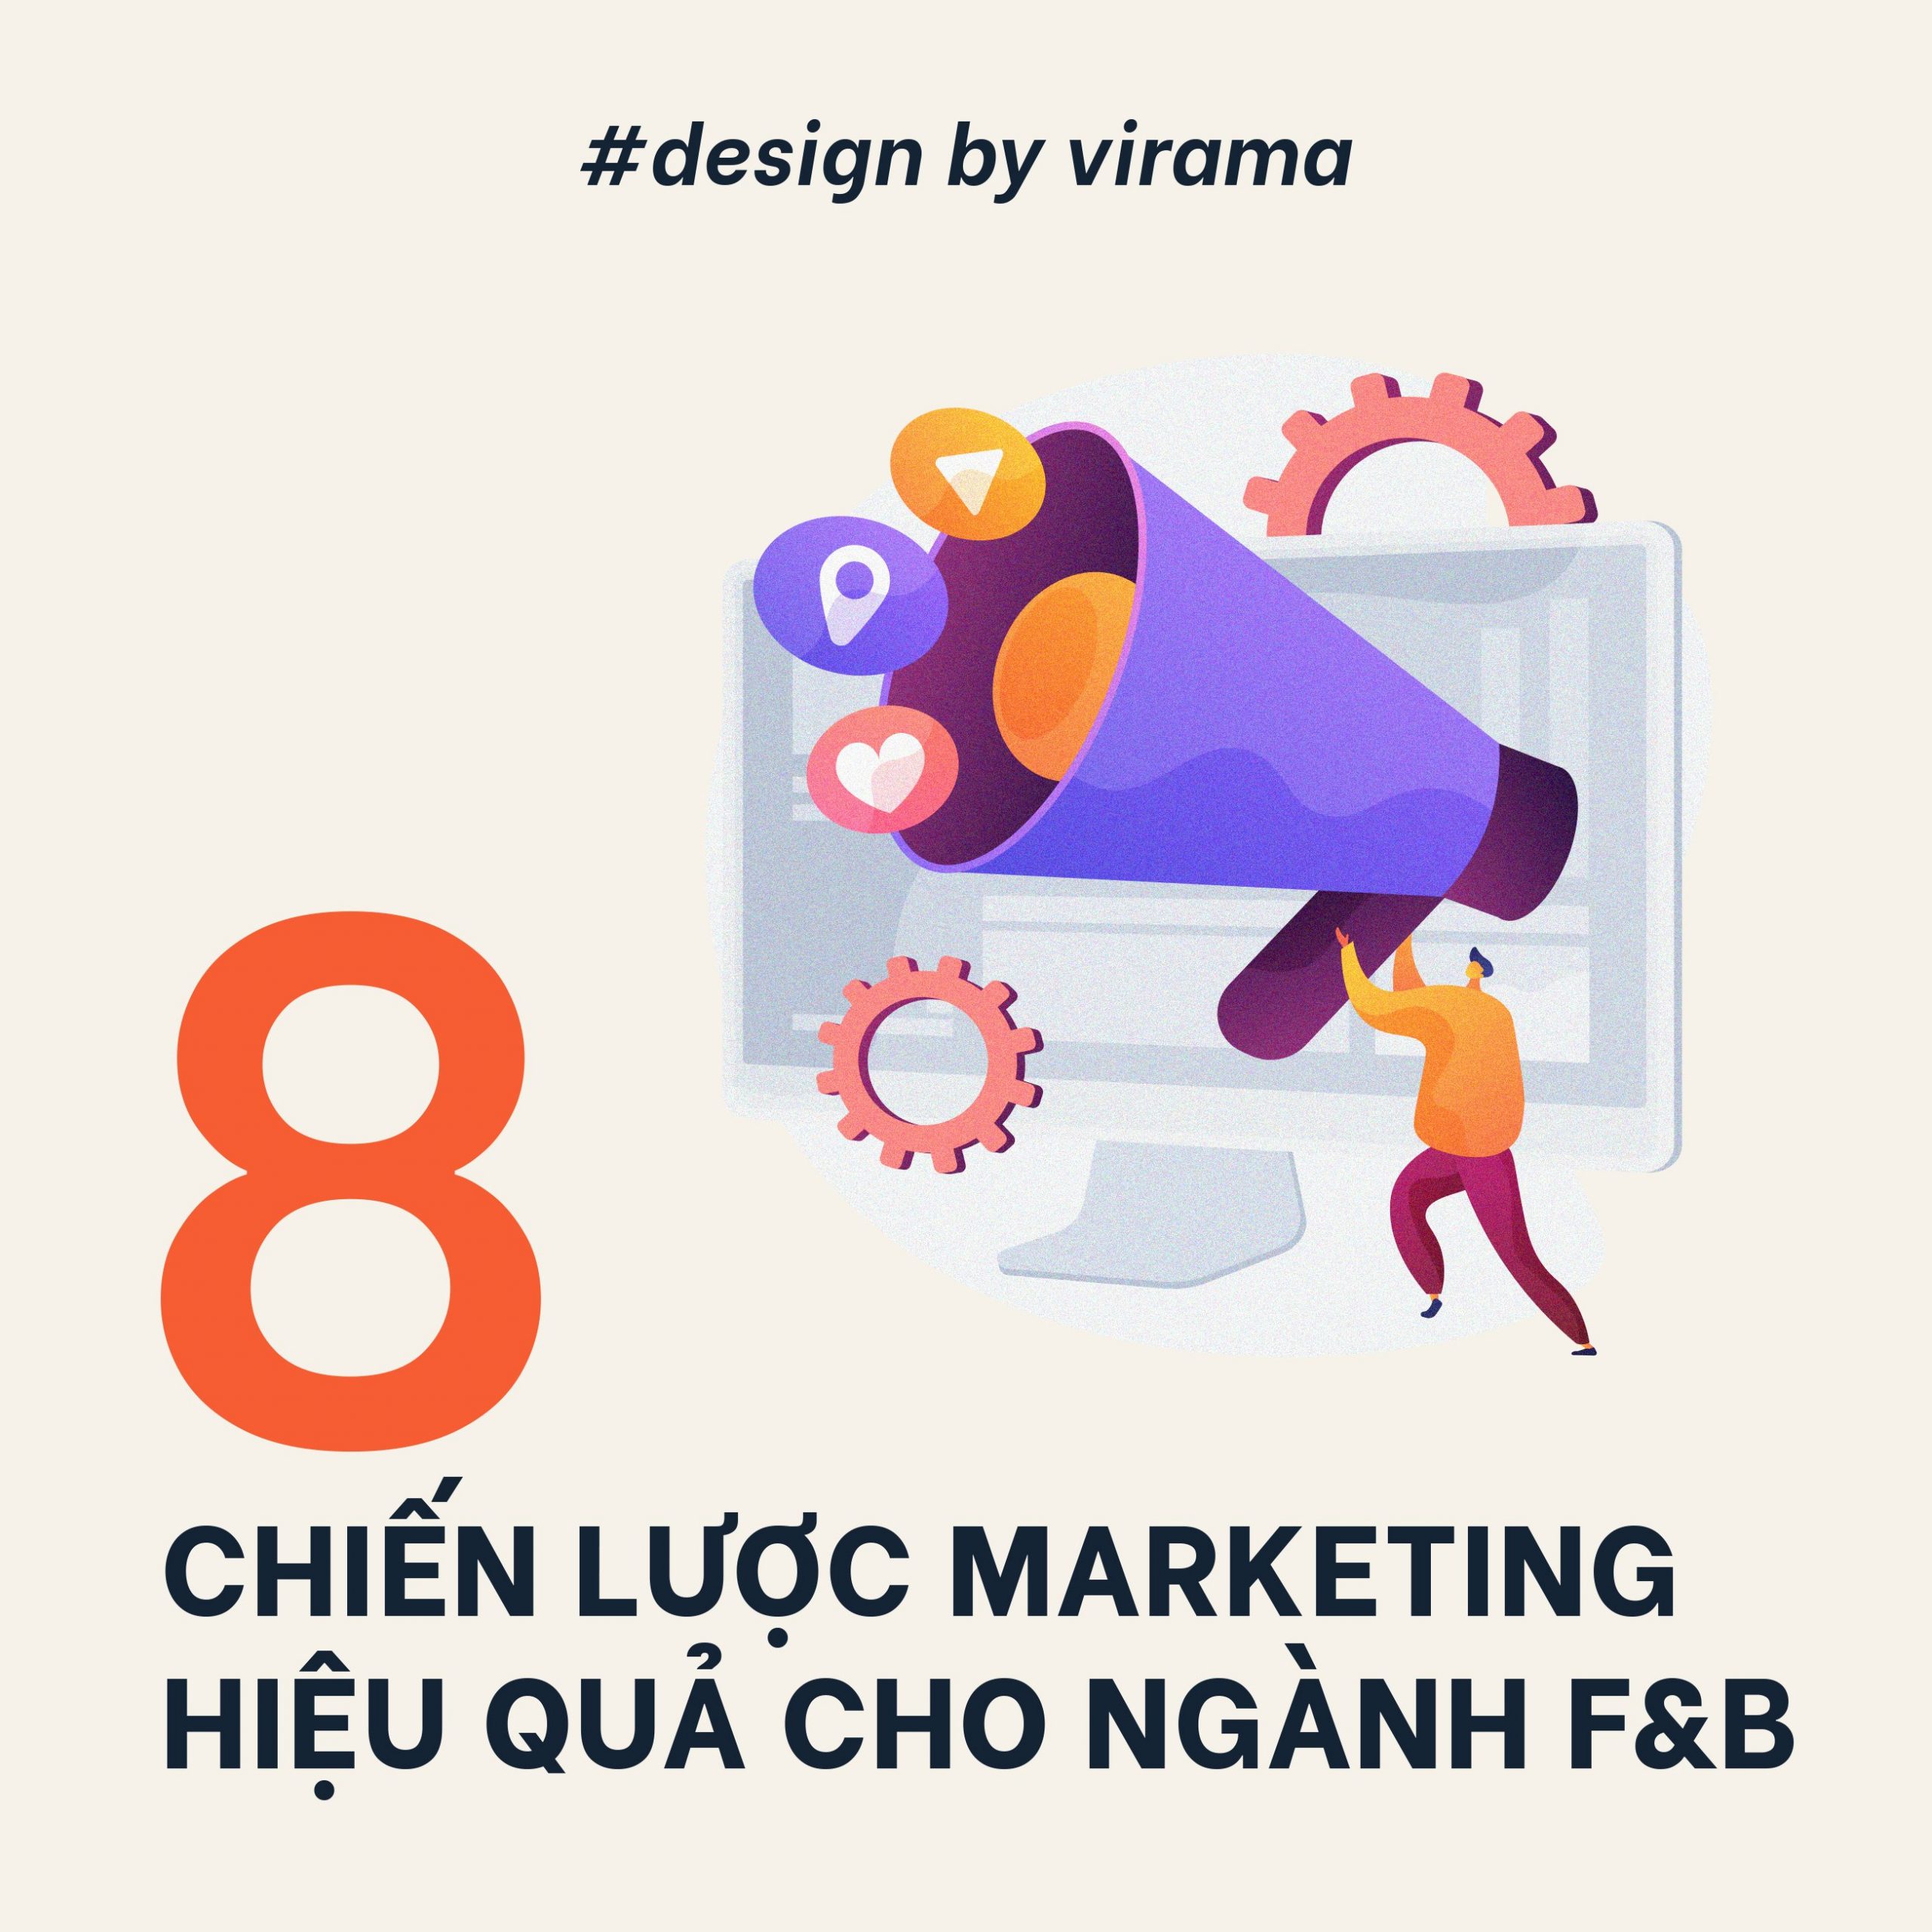 marketing-cho-nganh-f-b-1